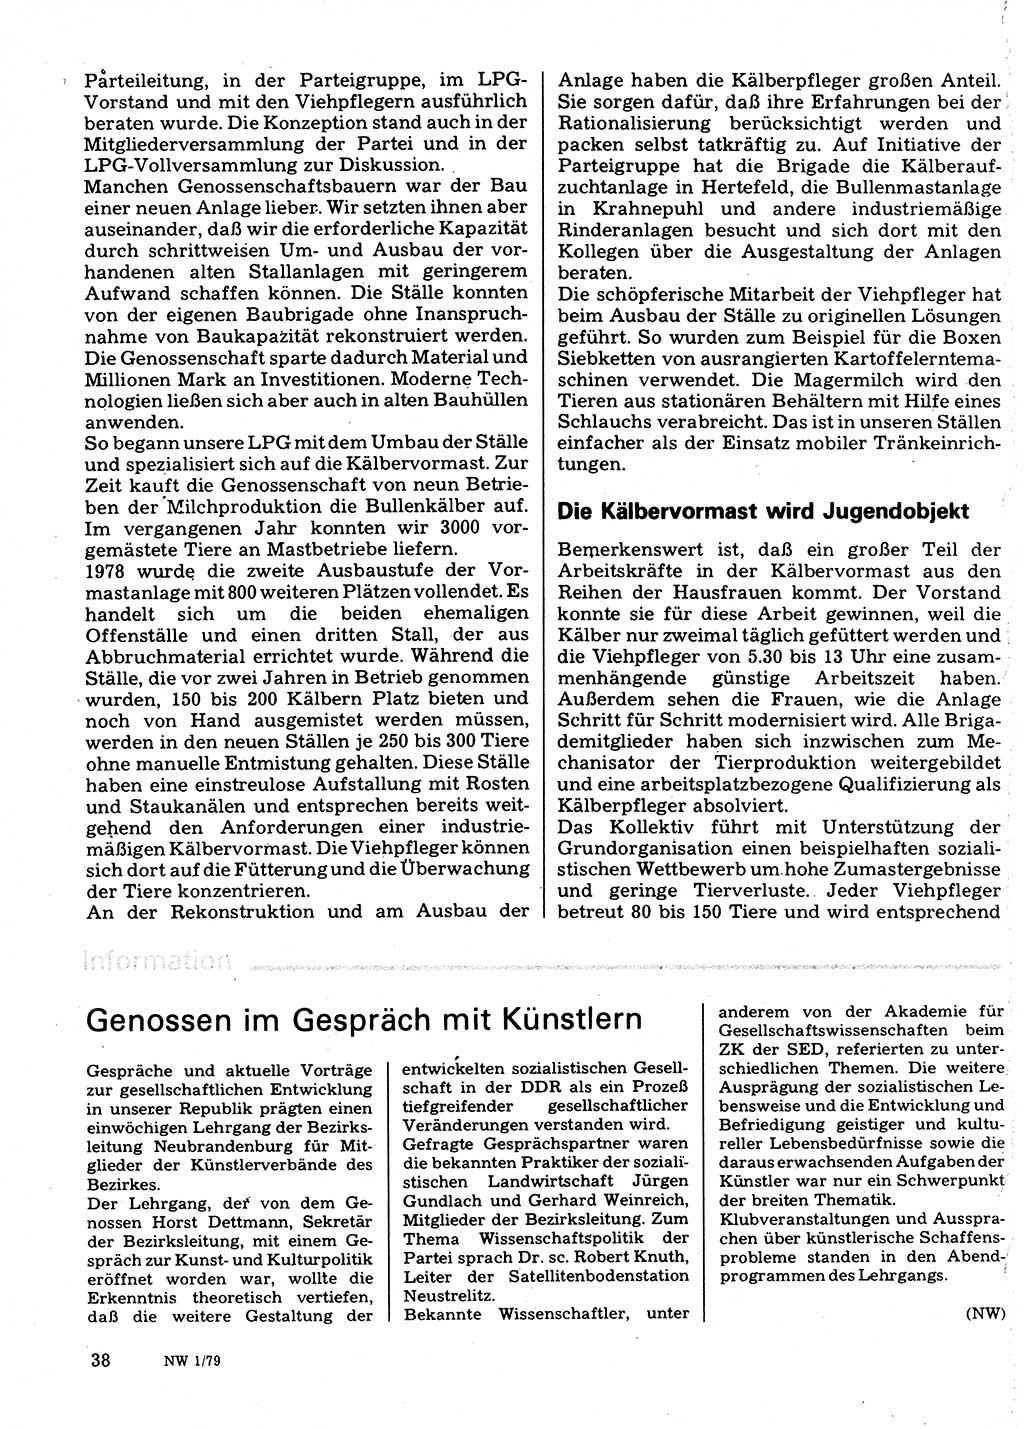 Neuer Weg (NW), Organ des Zentralkomitees (ZK) der SED (Sozialistische Einheitspartei Deutschlands) für Fragen des Parteilebens, 34. Jahrgang [Deutsche Demokratische Republik (DDR)] 1979, Seite 38 (NW ZK SED DDR 1979, S. 38)